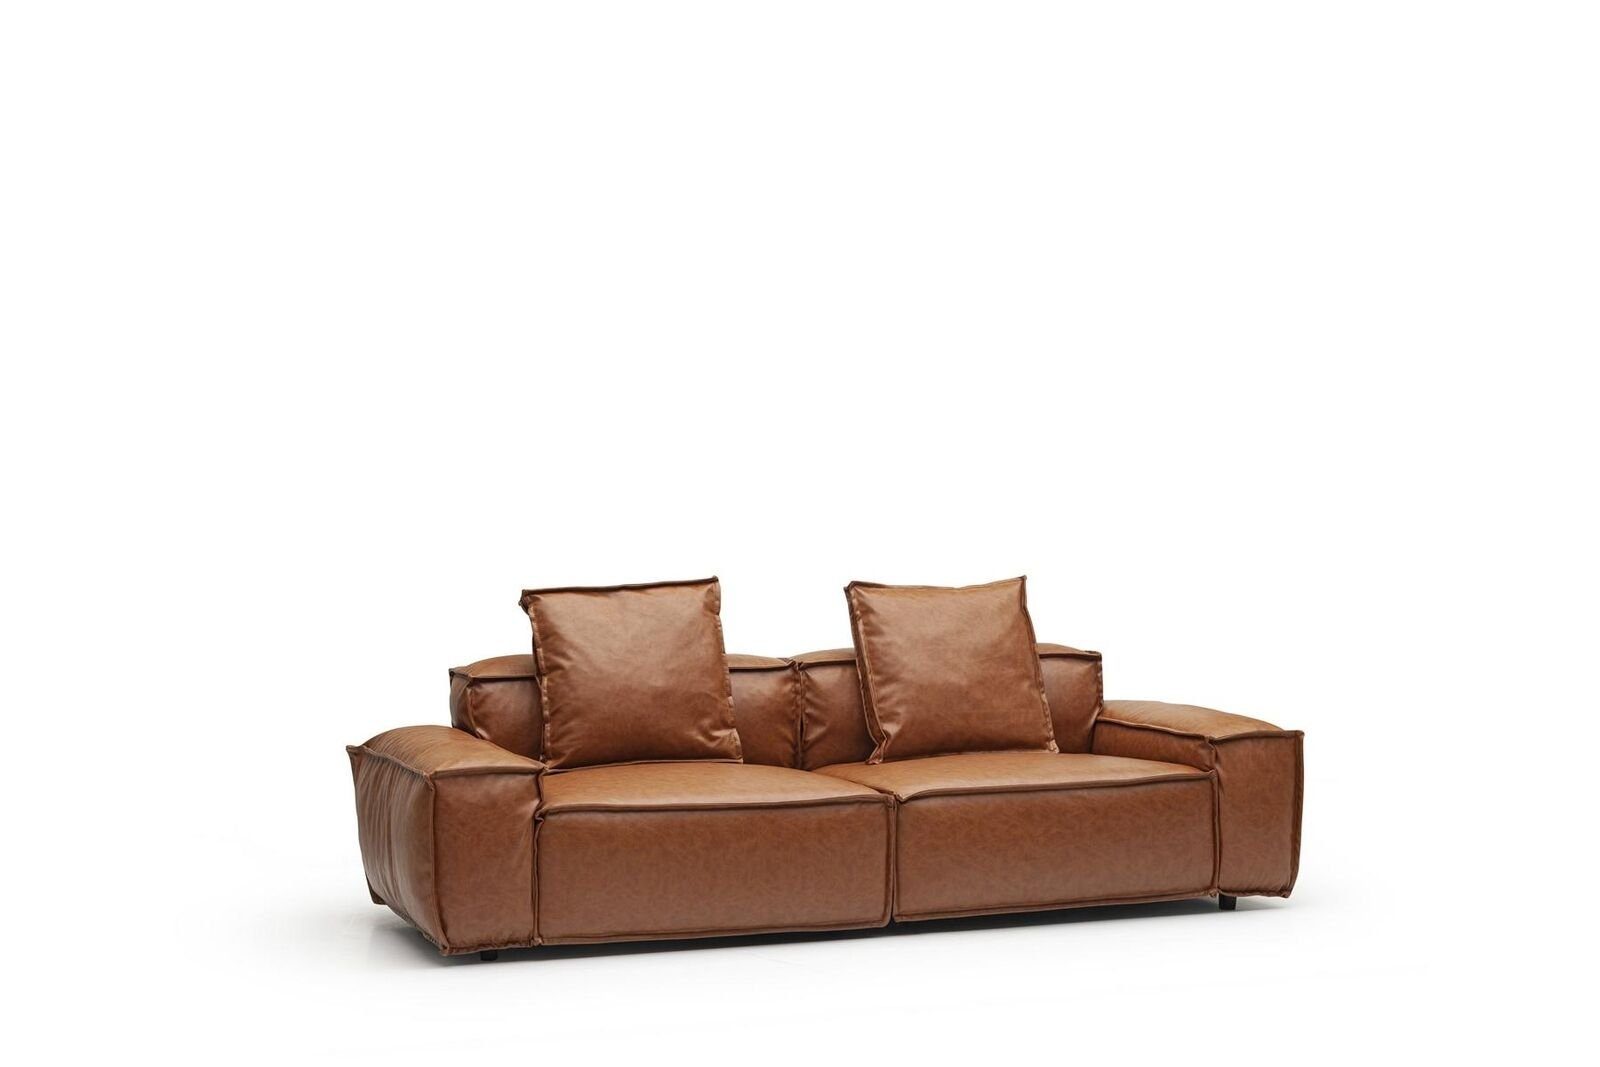 JVmoebel 3-Sitzer Dreisitzer Couch Sitzpolster Braune Gemütliche Sofas Wohnzimmer, 1 Teile, Made in Europa